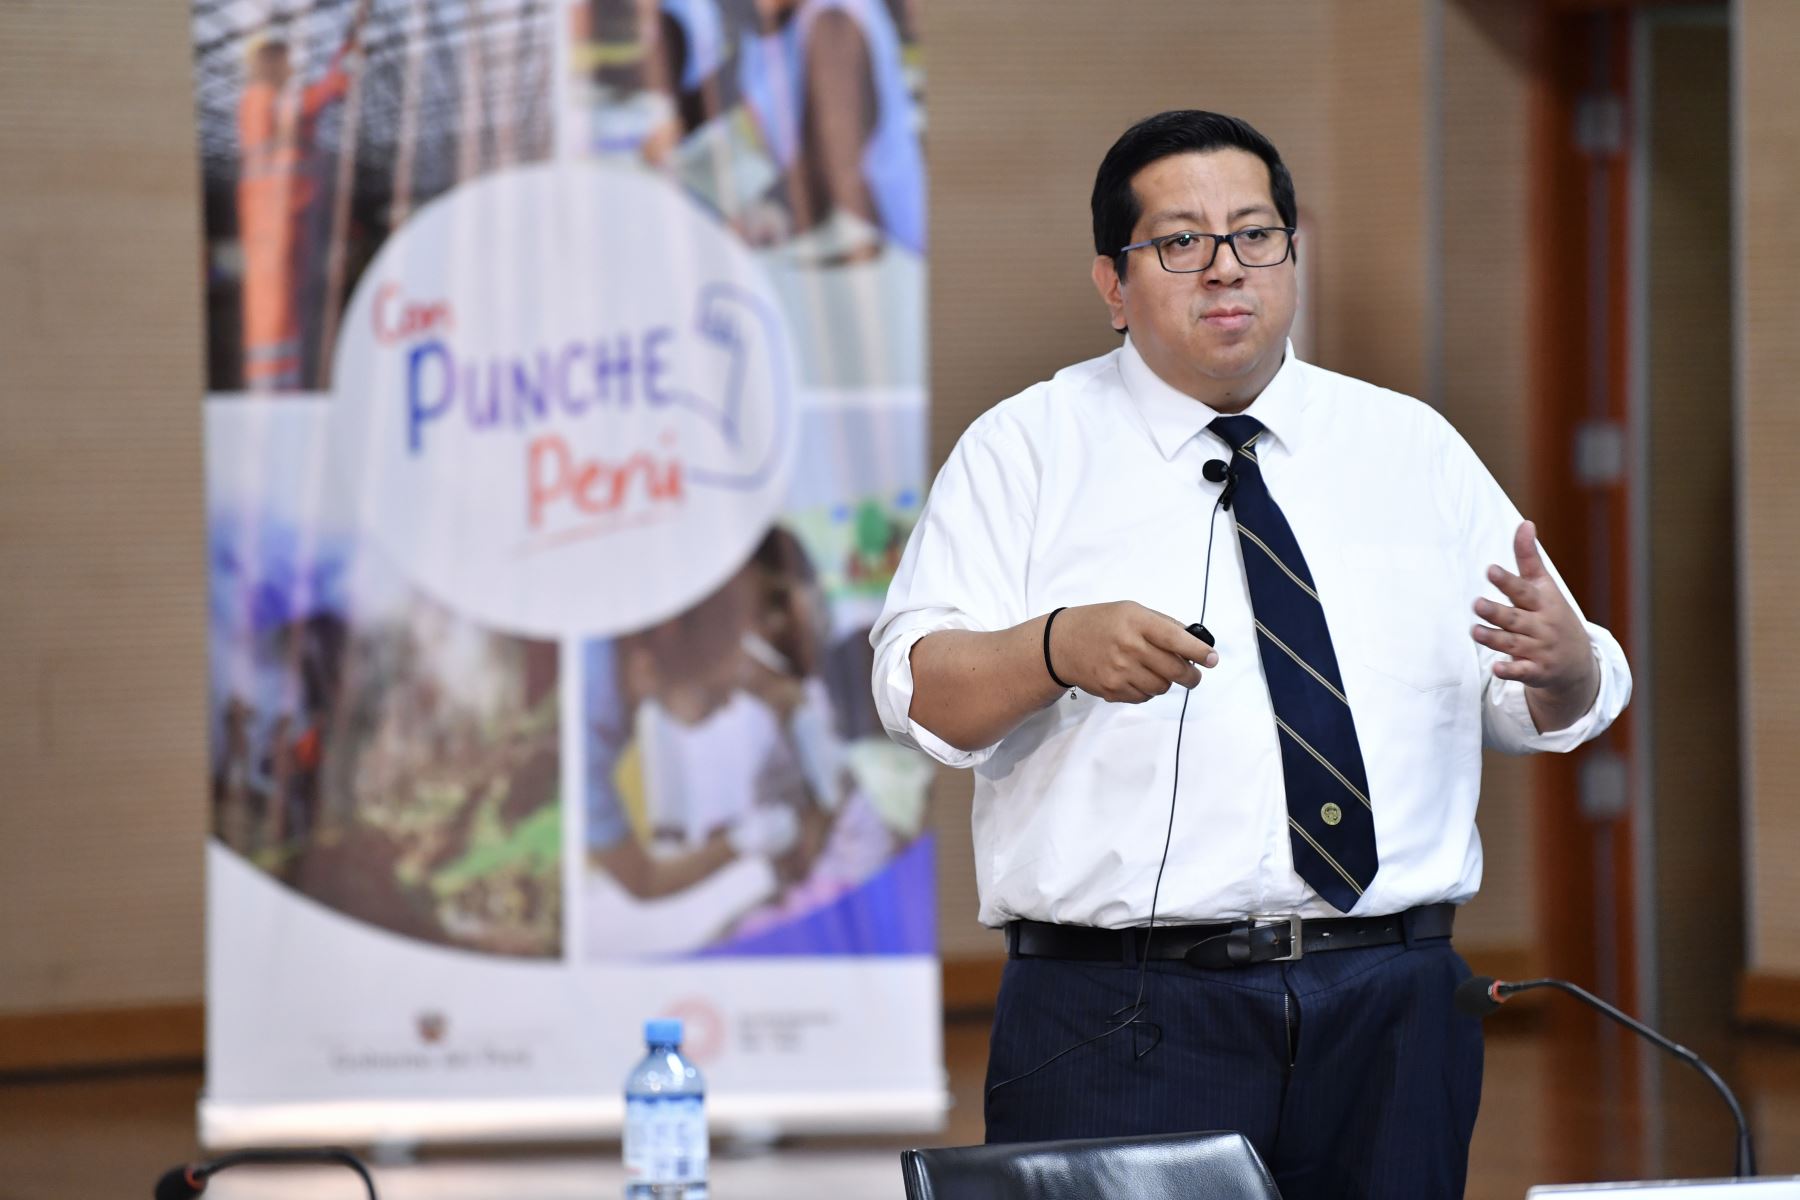 El ministro de Economía Alex Contreras, brindó una conferencia de prensa donde se realizó la presentación de las medidas del Plan “Con Punche Perú : atención a la emergencia”.
Foto: ANDINA/MEF